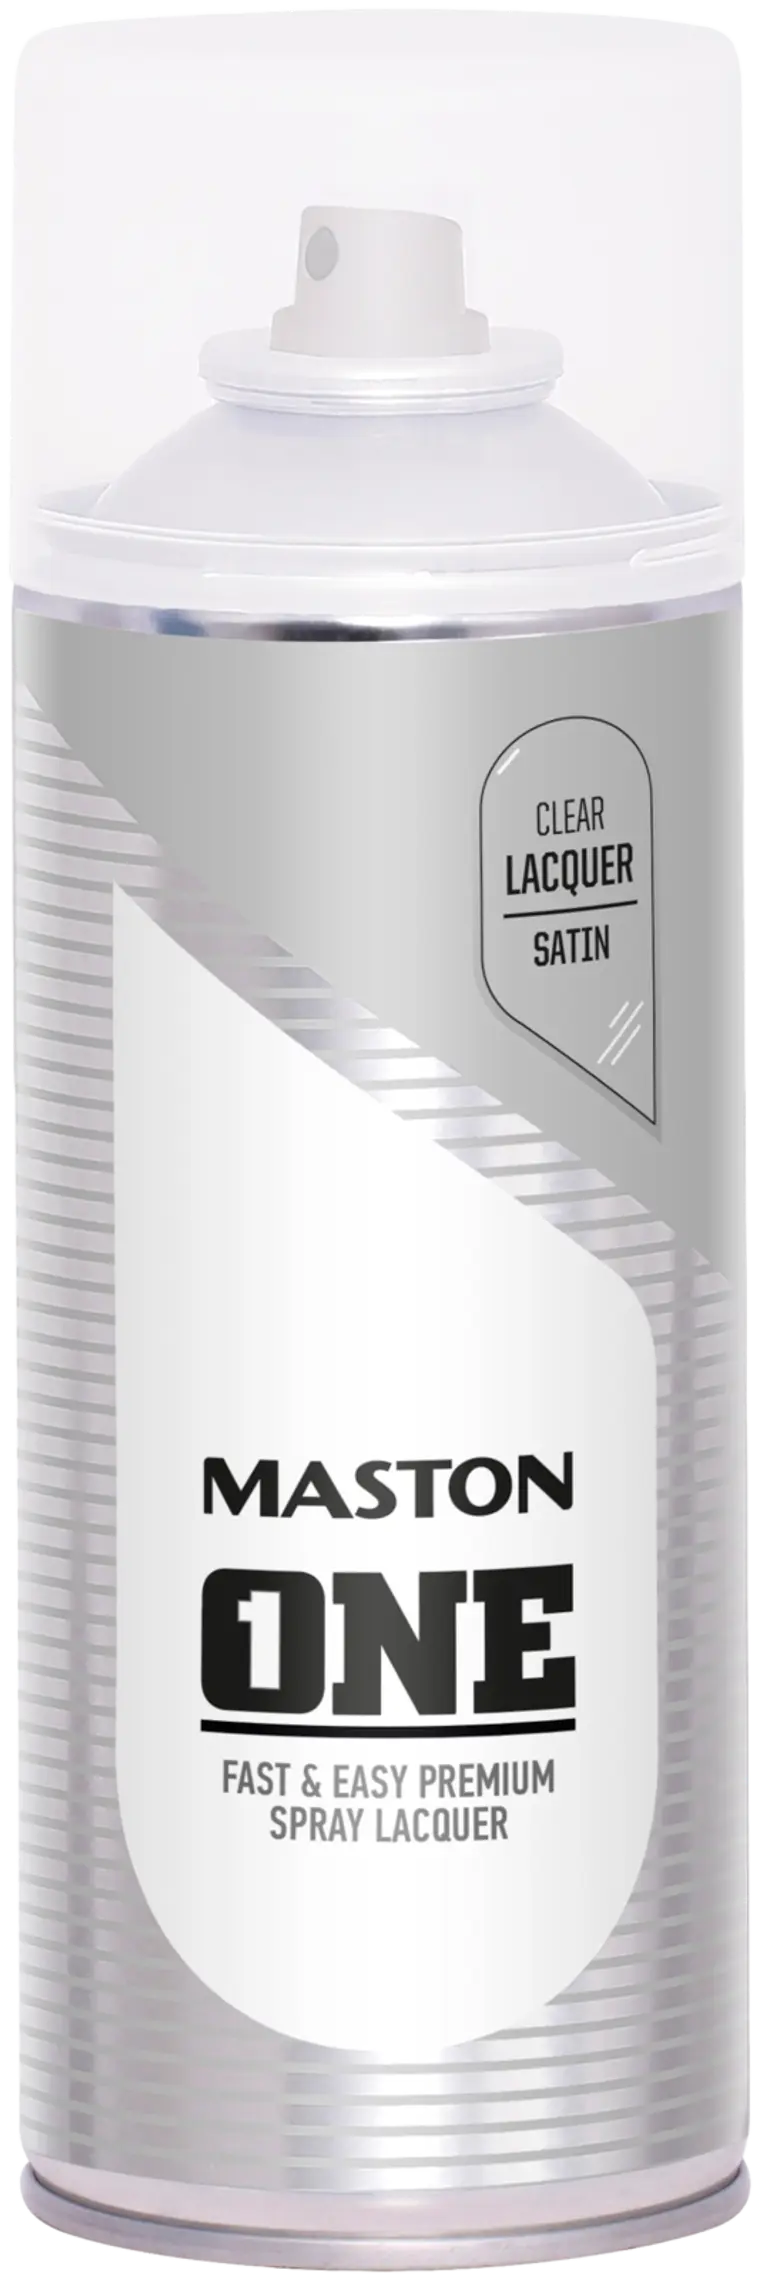 Maston | Prisma verkkokauppa